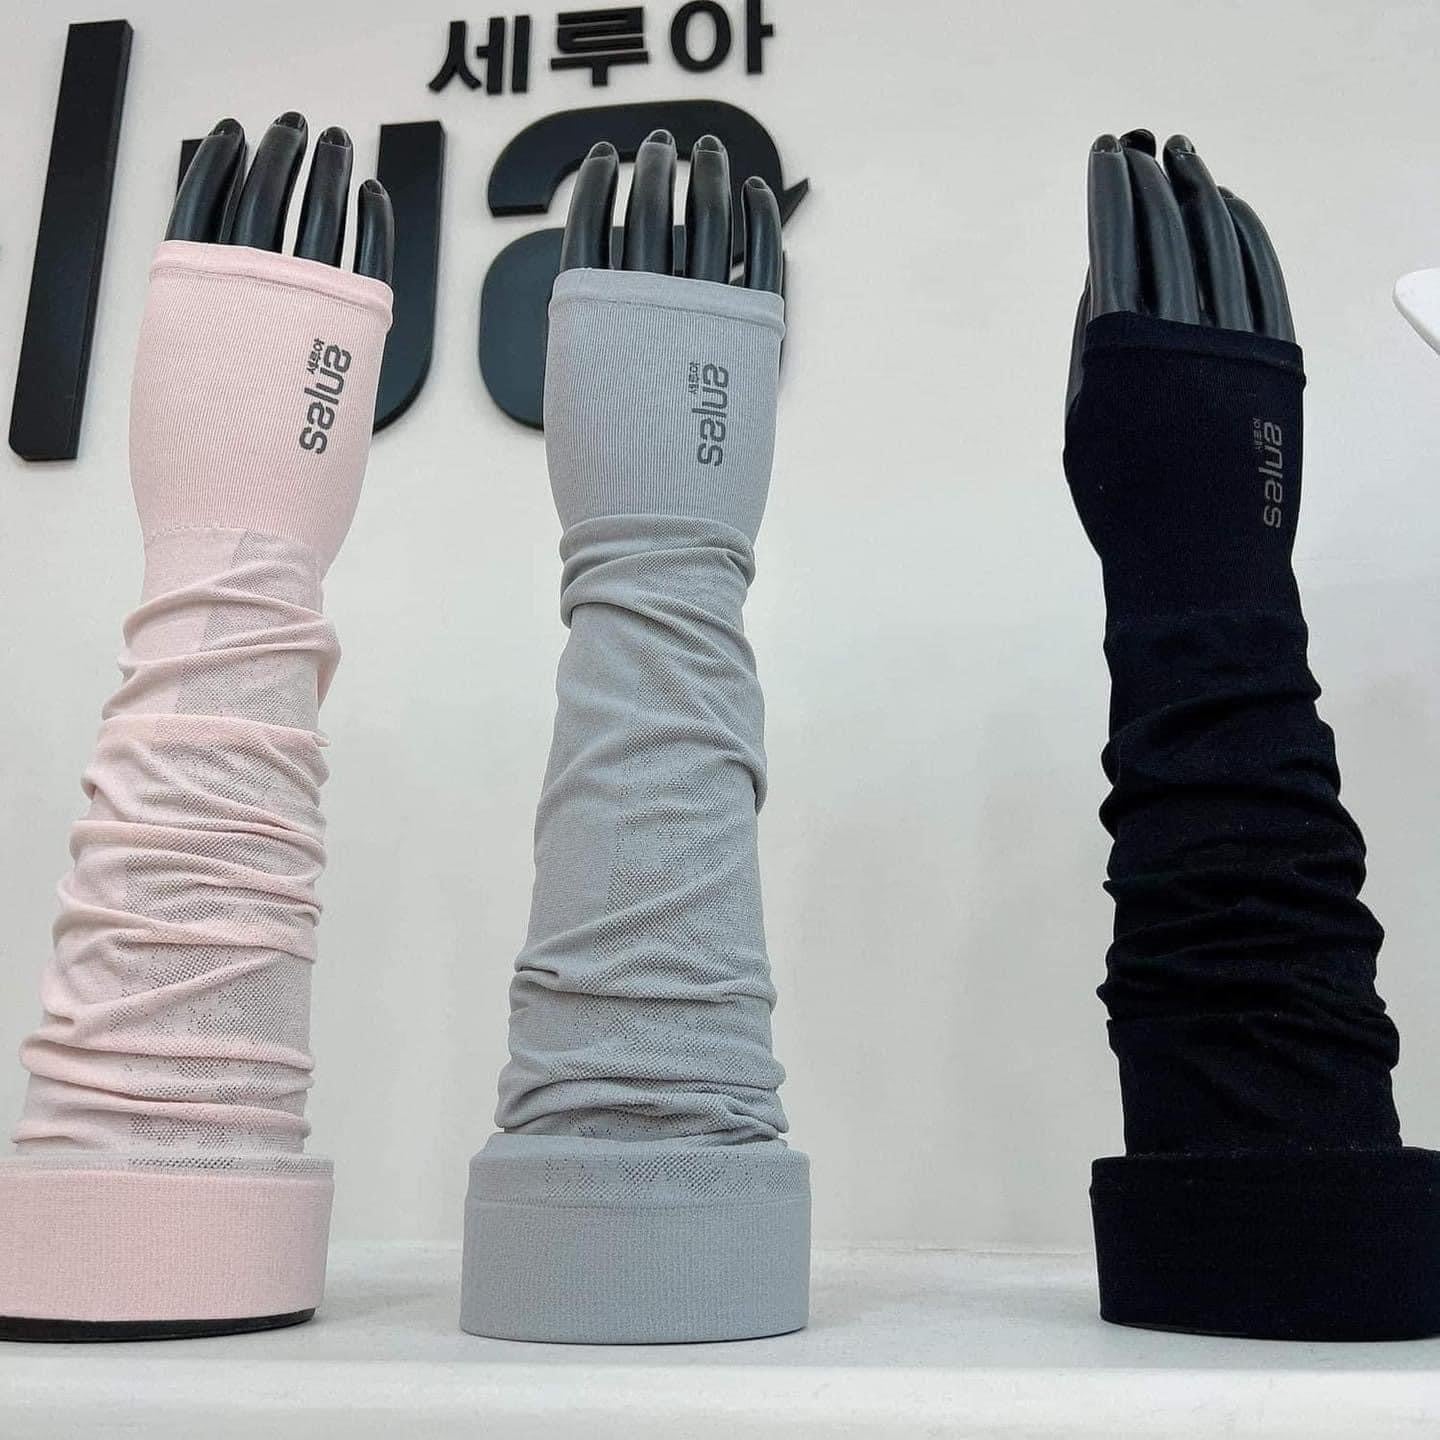 Găng tay chống nắng, chống tia UV, làm mát SALUA nội địa Hàn